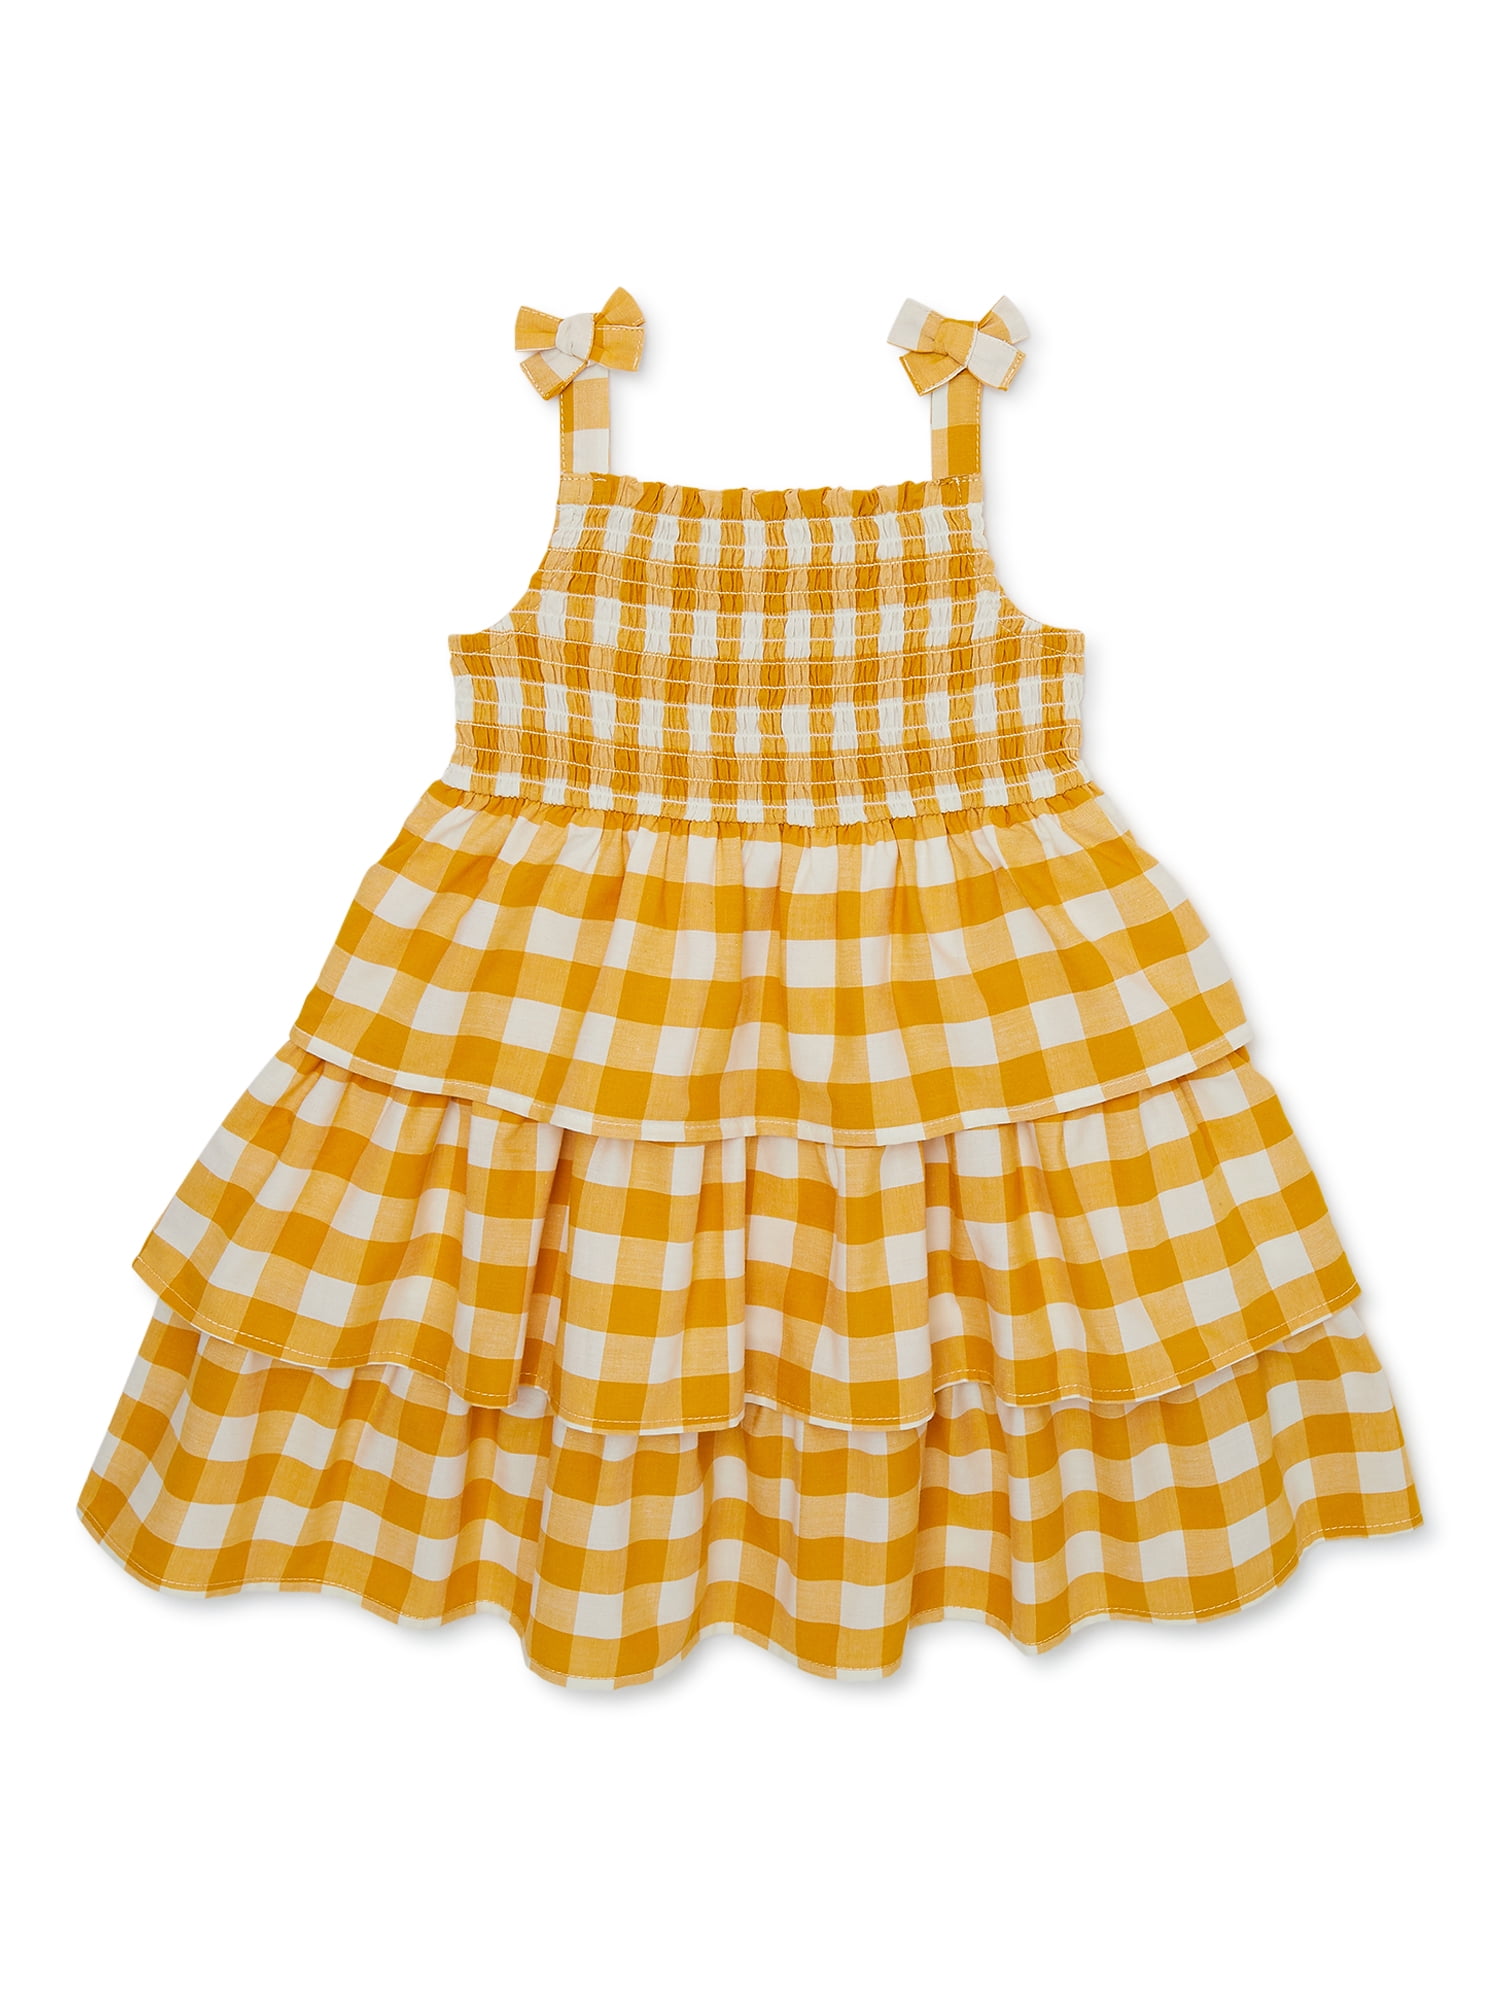 Yellow Gingham Dress Straw Bunny w/Basket – The Christmas Junkie